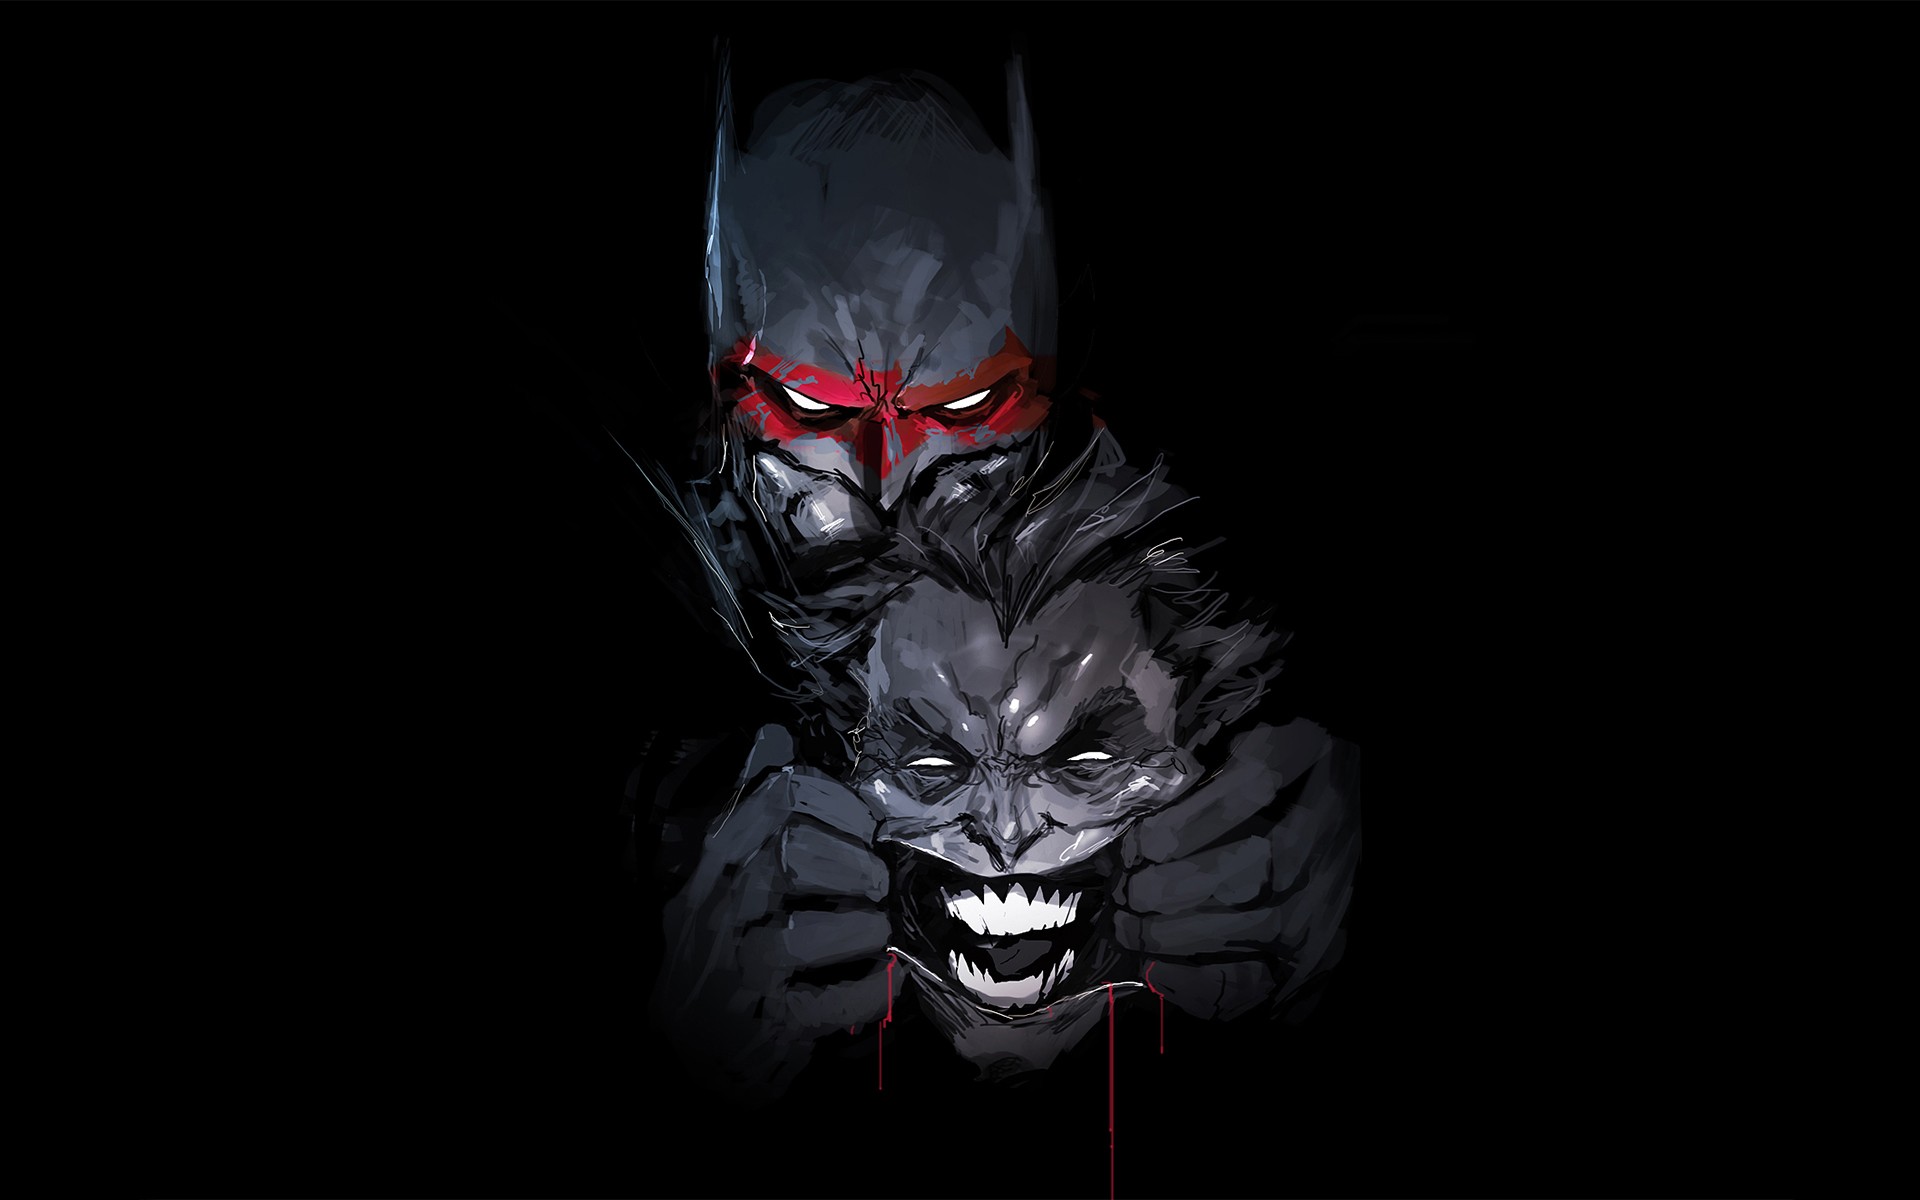 Descarga gratuita de fondo de pantalla para móvil de Historietas, The Batman, Guasón, Dc Comics.